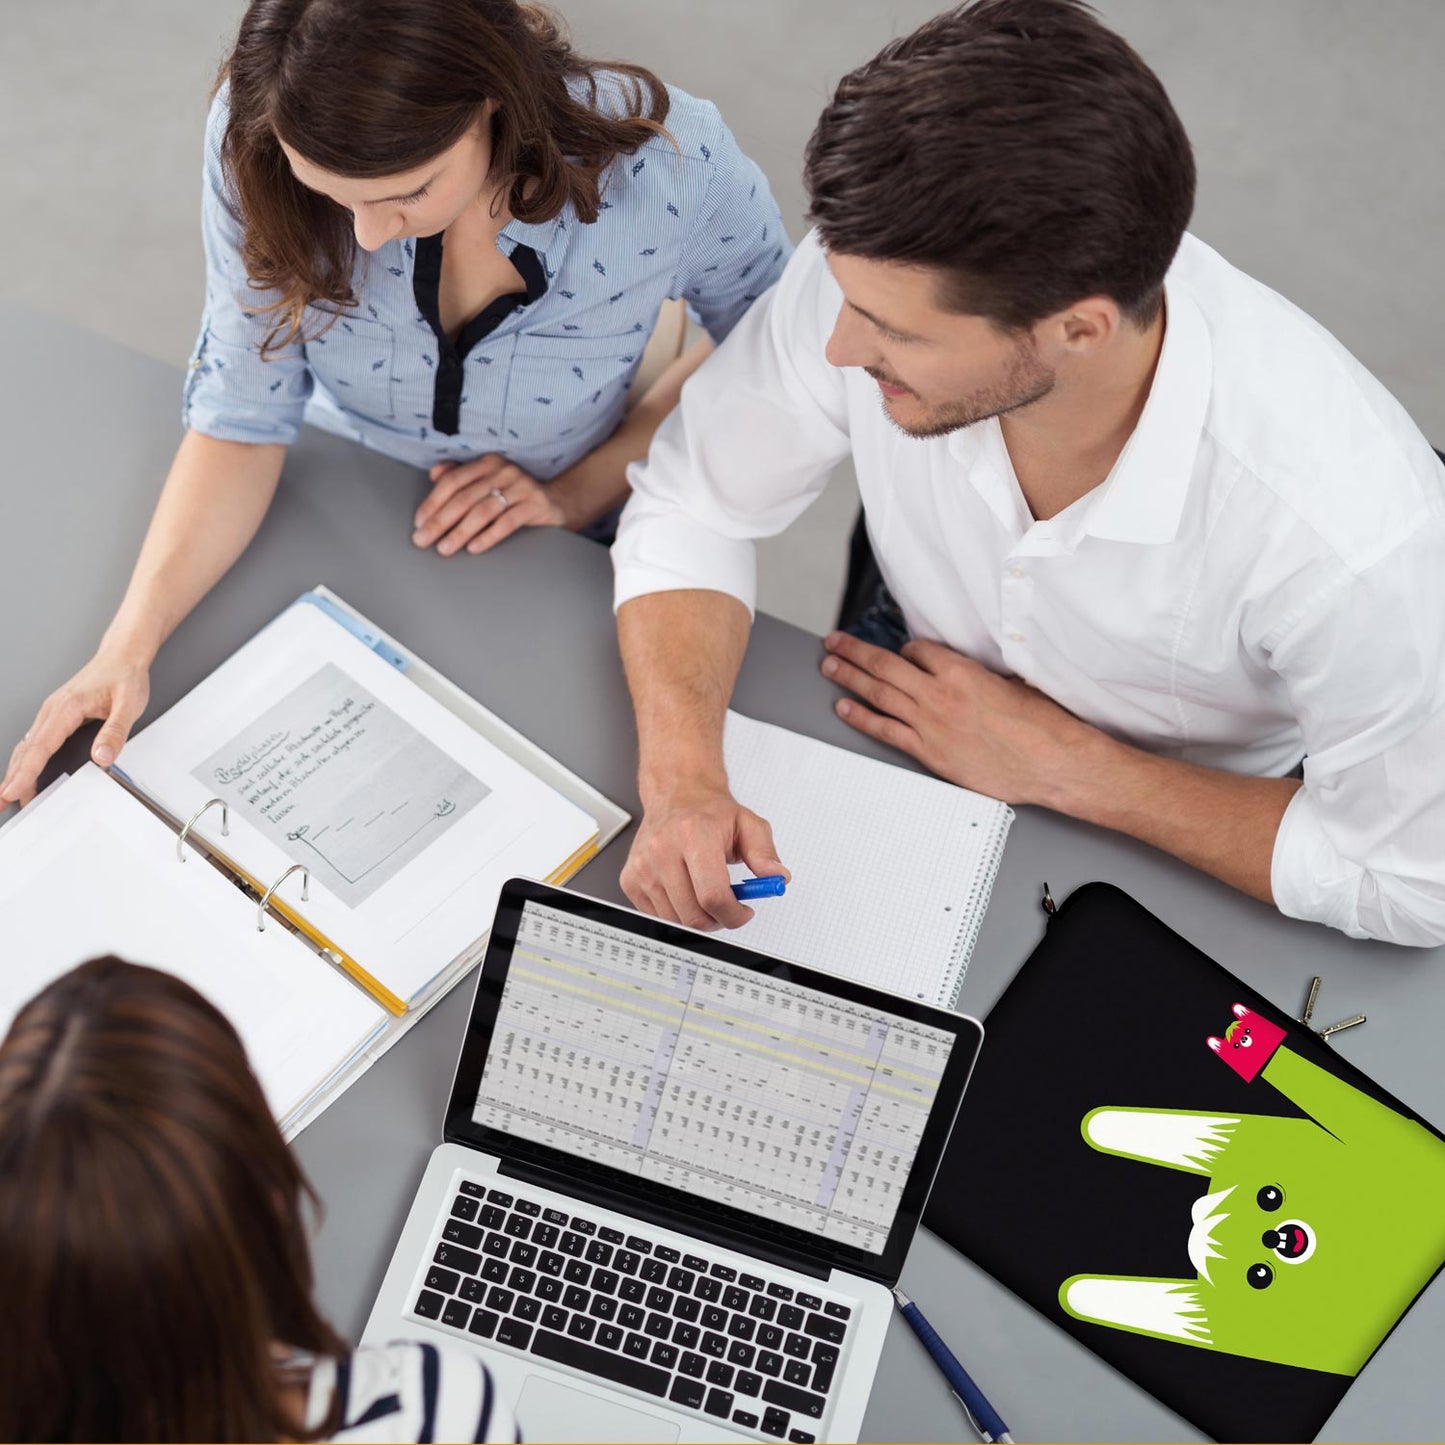 LS162 Toothy Designer Schutzhülle für Laptop in schwarz-grün als Business-Zubehör im Büro, bei Kunden und auf Dienstreisen